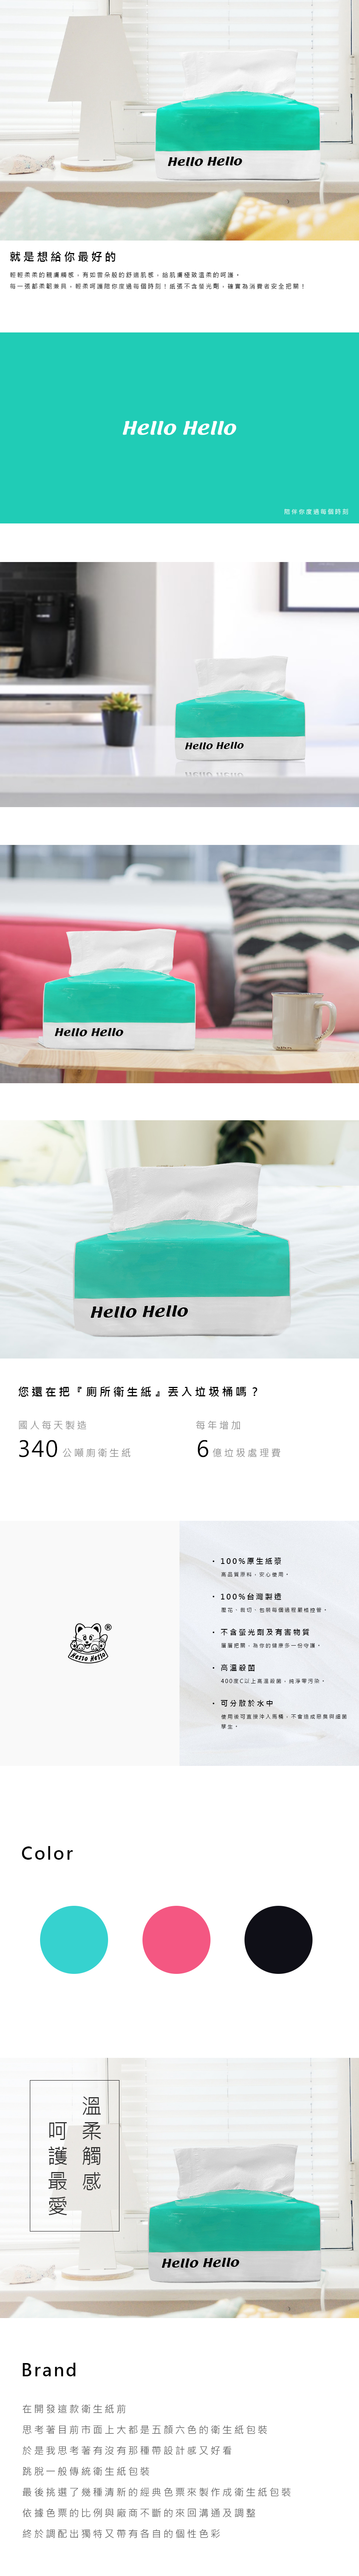 31020-1 hello 抽取式衛生紙設計_內頁(Redesign)